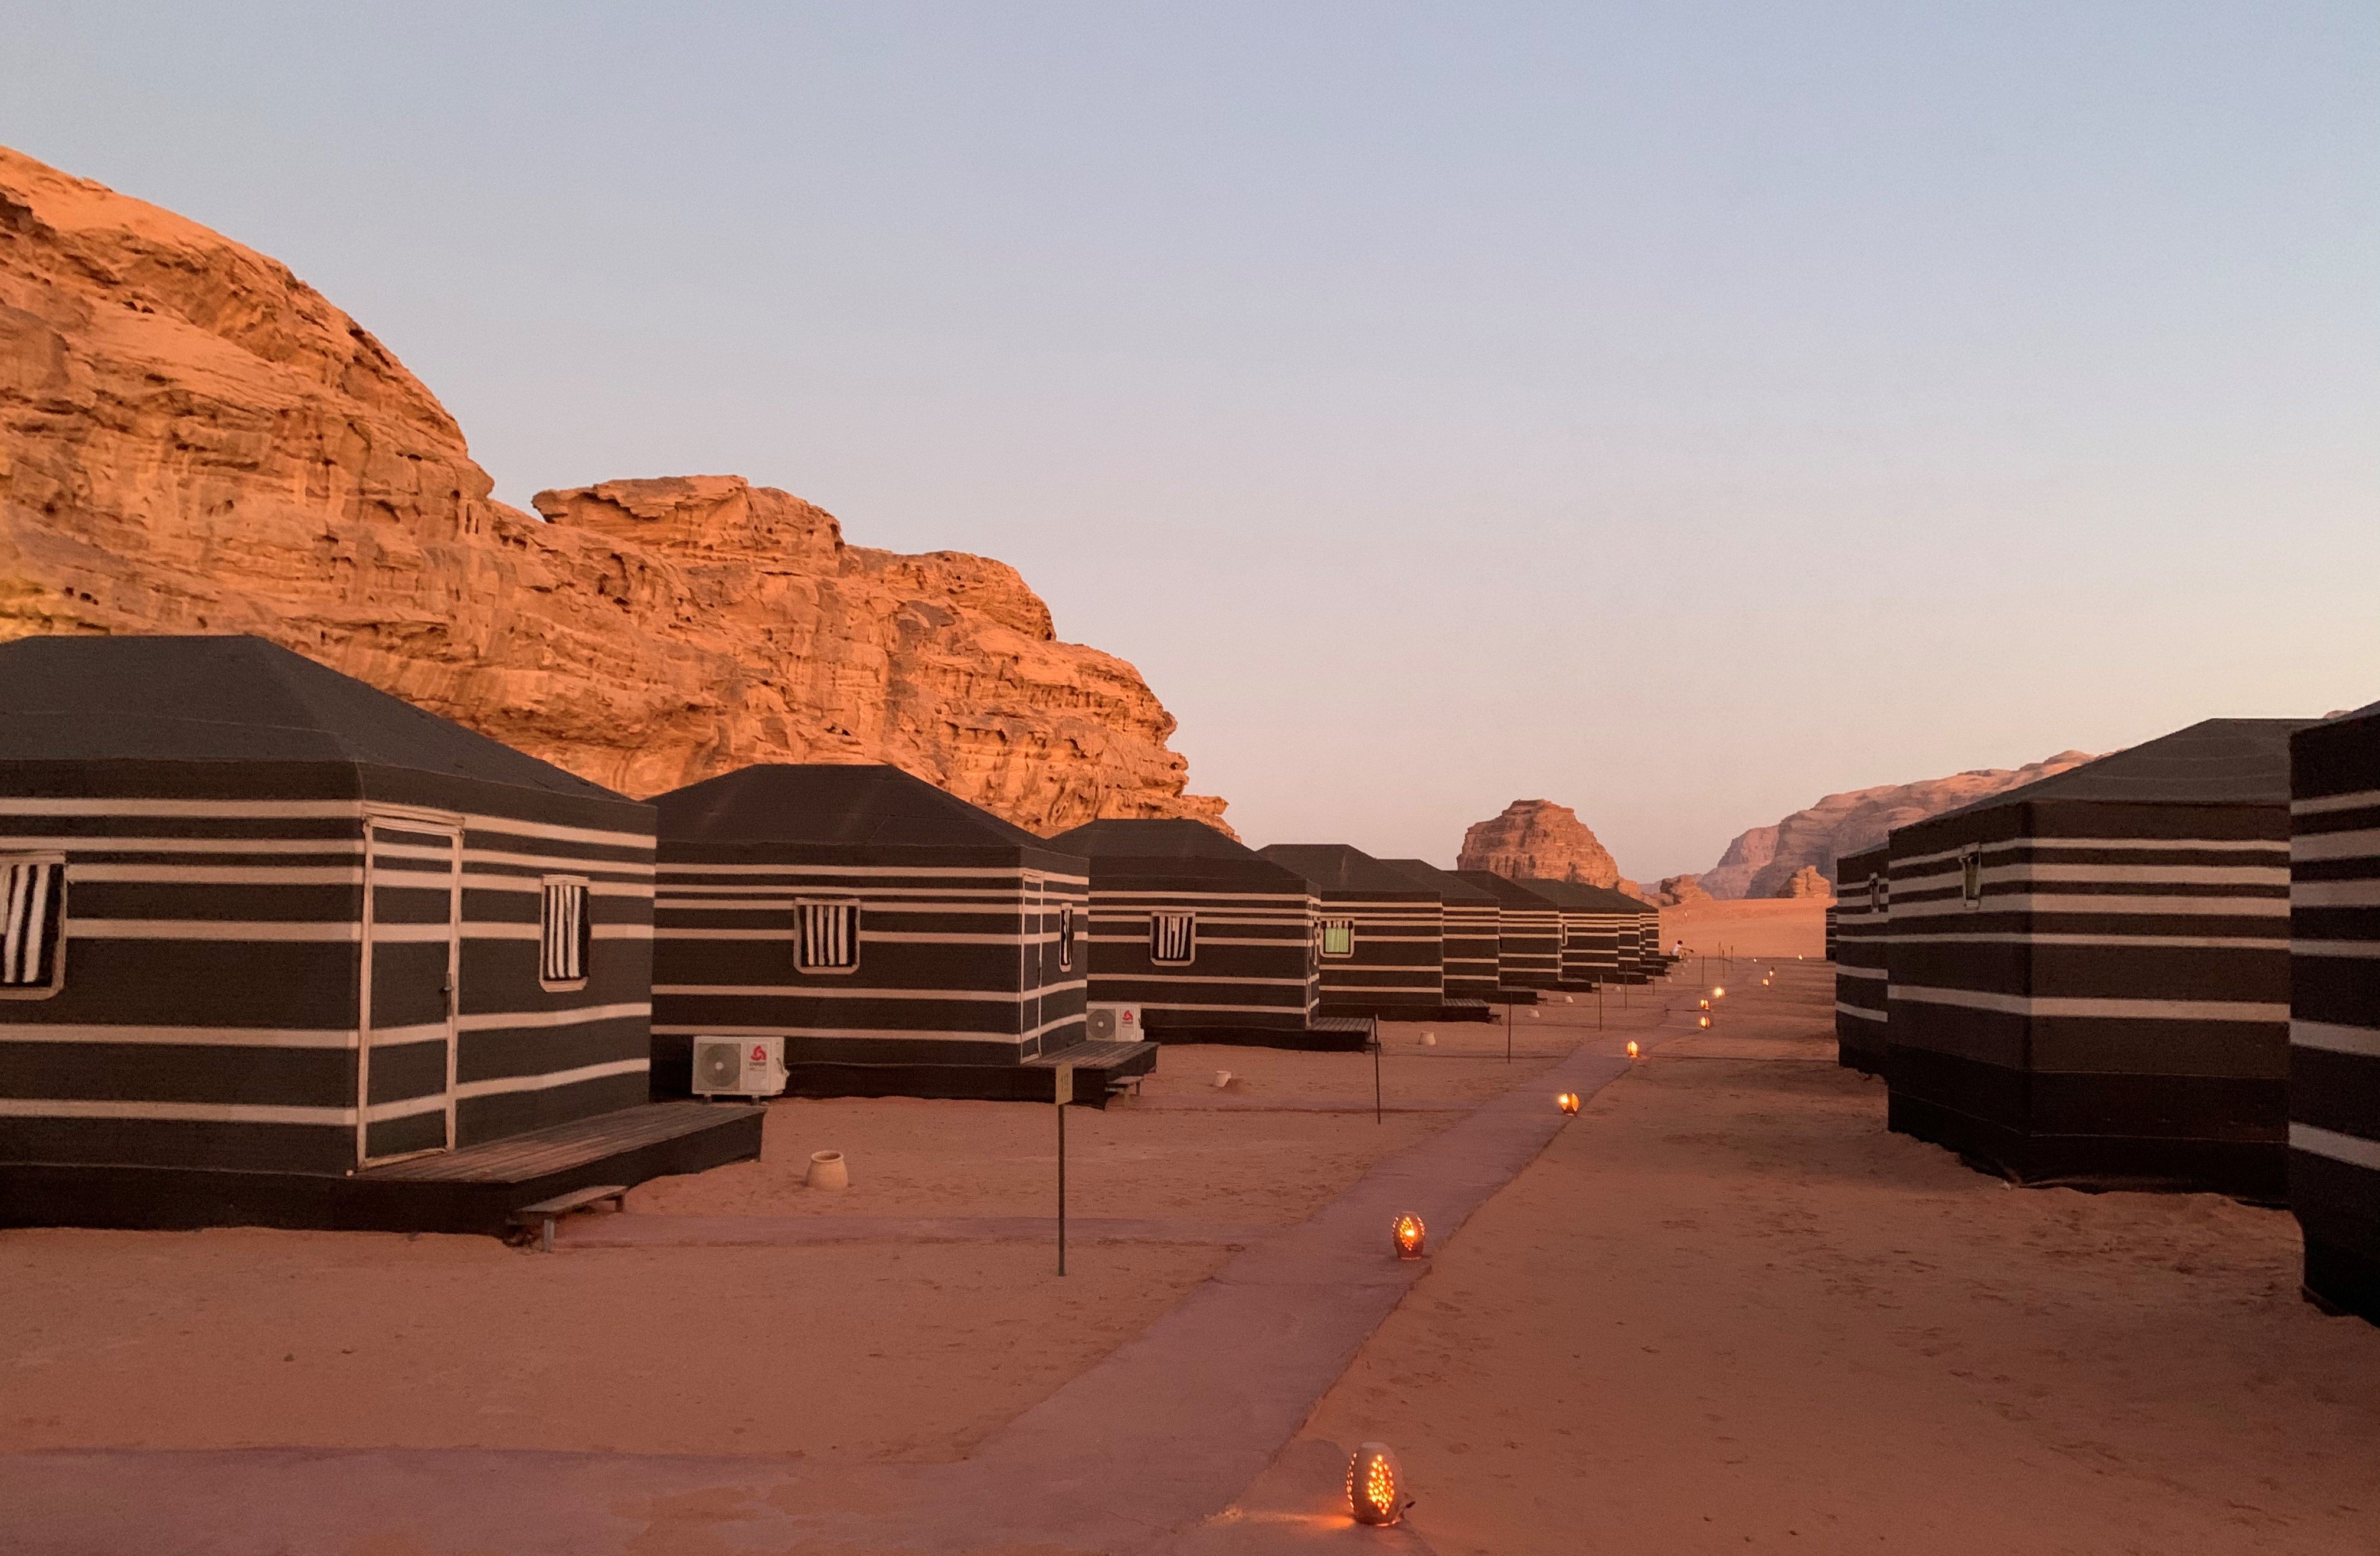 Urlaub in Jordanien Erfahrungen - Familienreise in Jordanien - Wüstencamp Wadi Rum